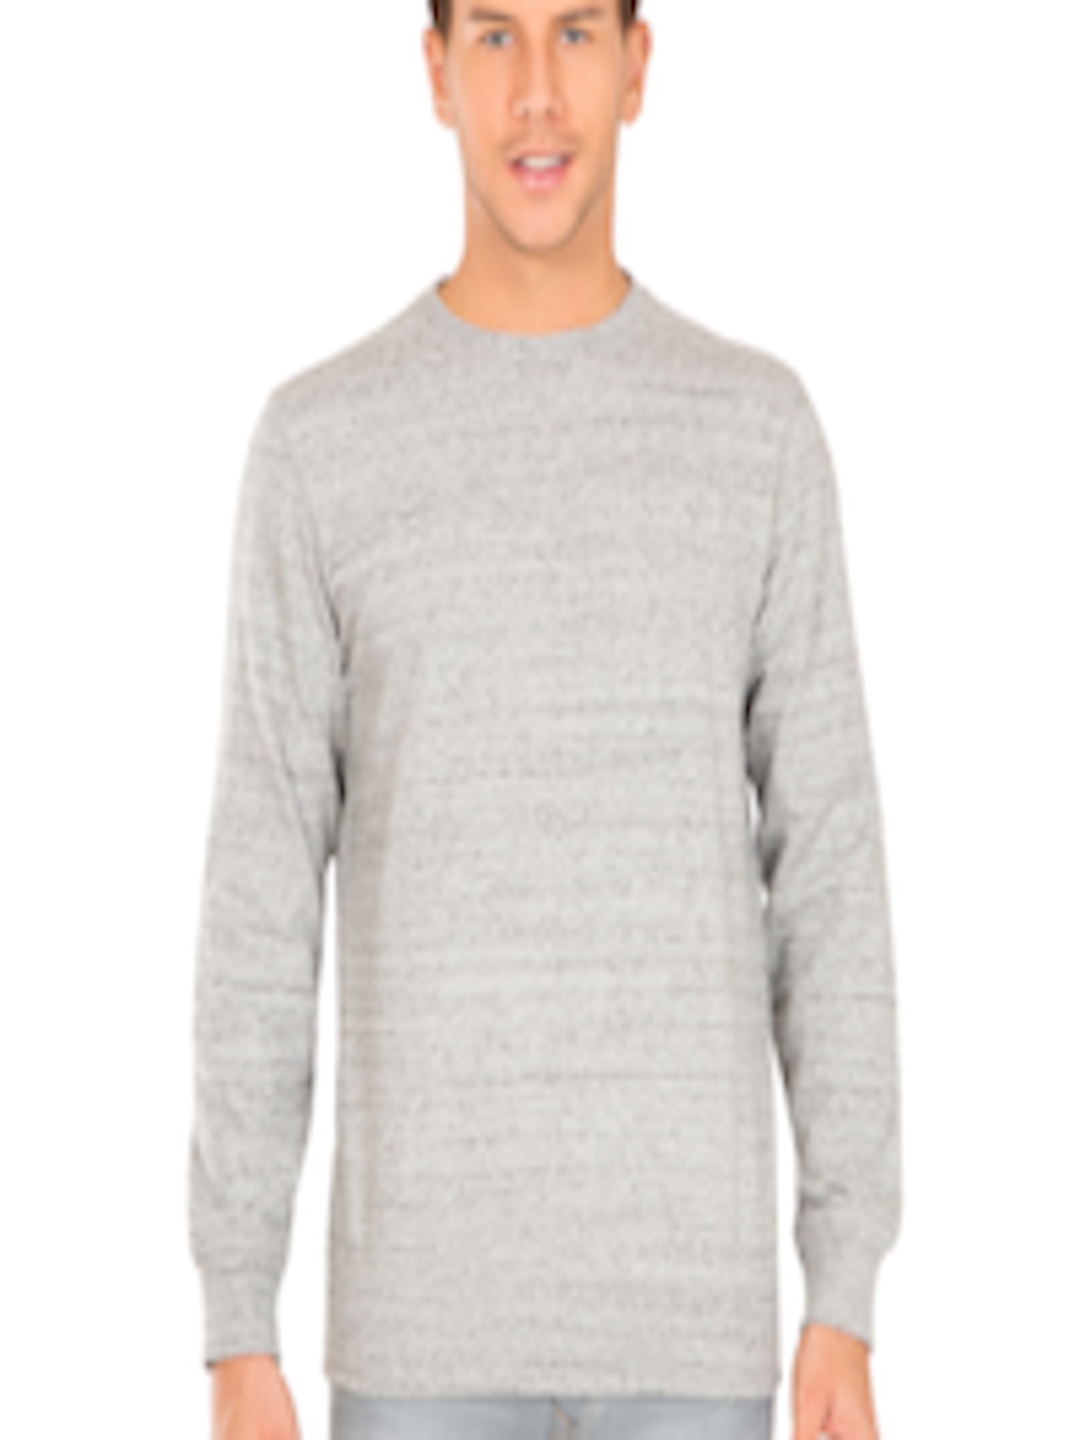 Buy Jockey Men Grey Melange Solid Sweatshirt - Sweatshirts for Men ...